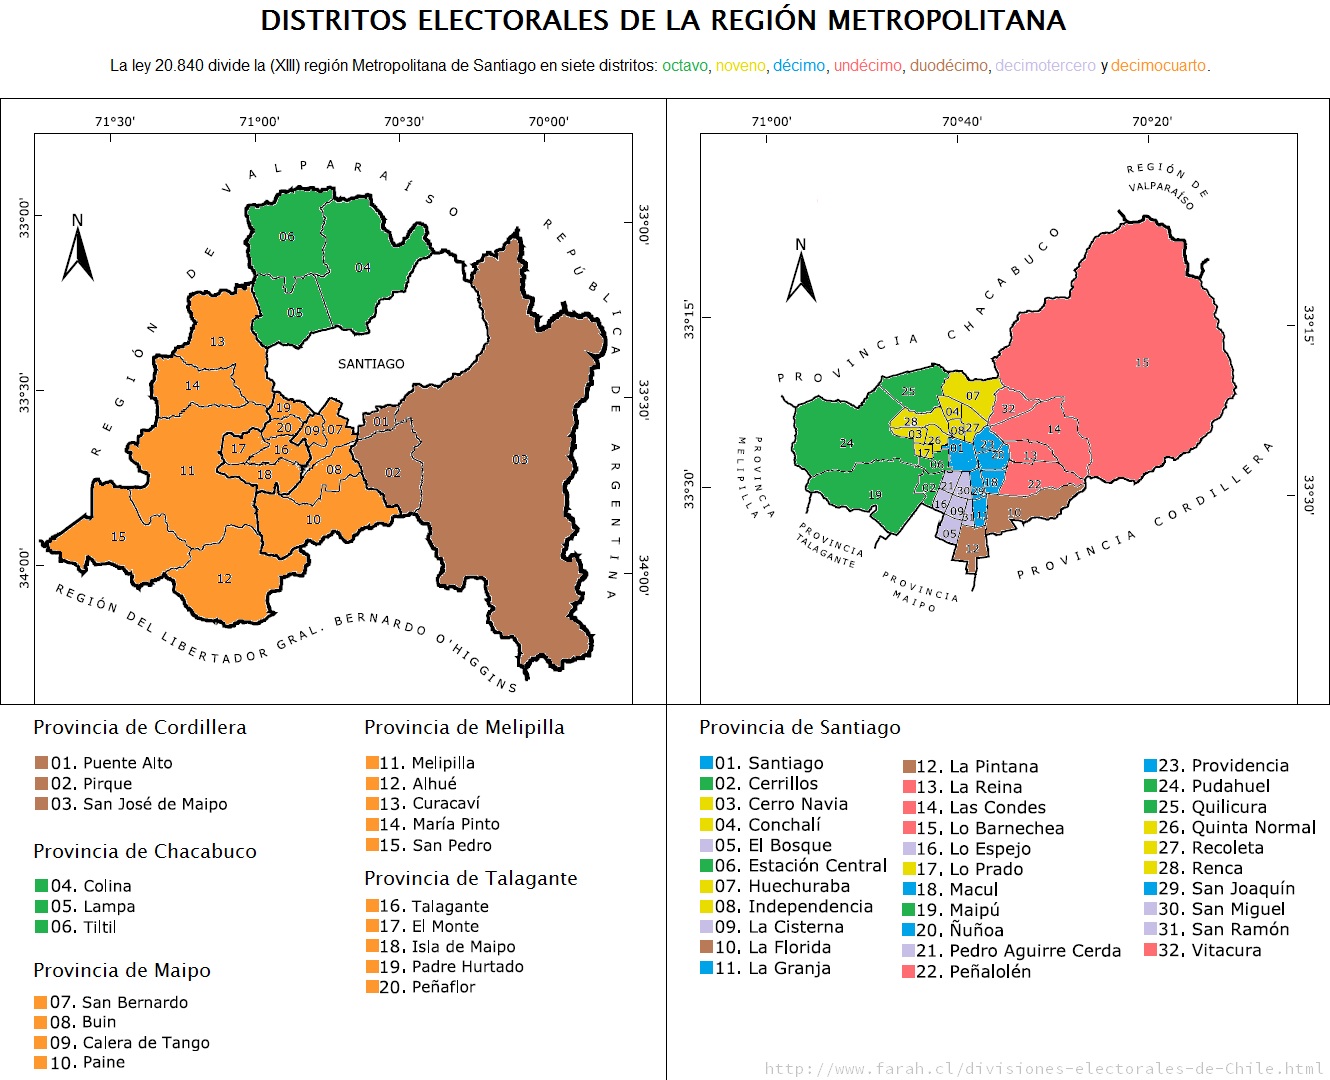 [Distritos electorales de la (XIII) región Metropolitana de Santiago.]